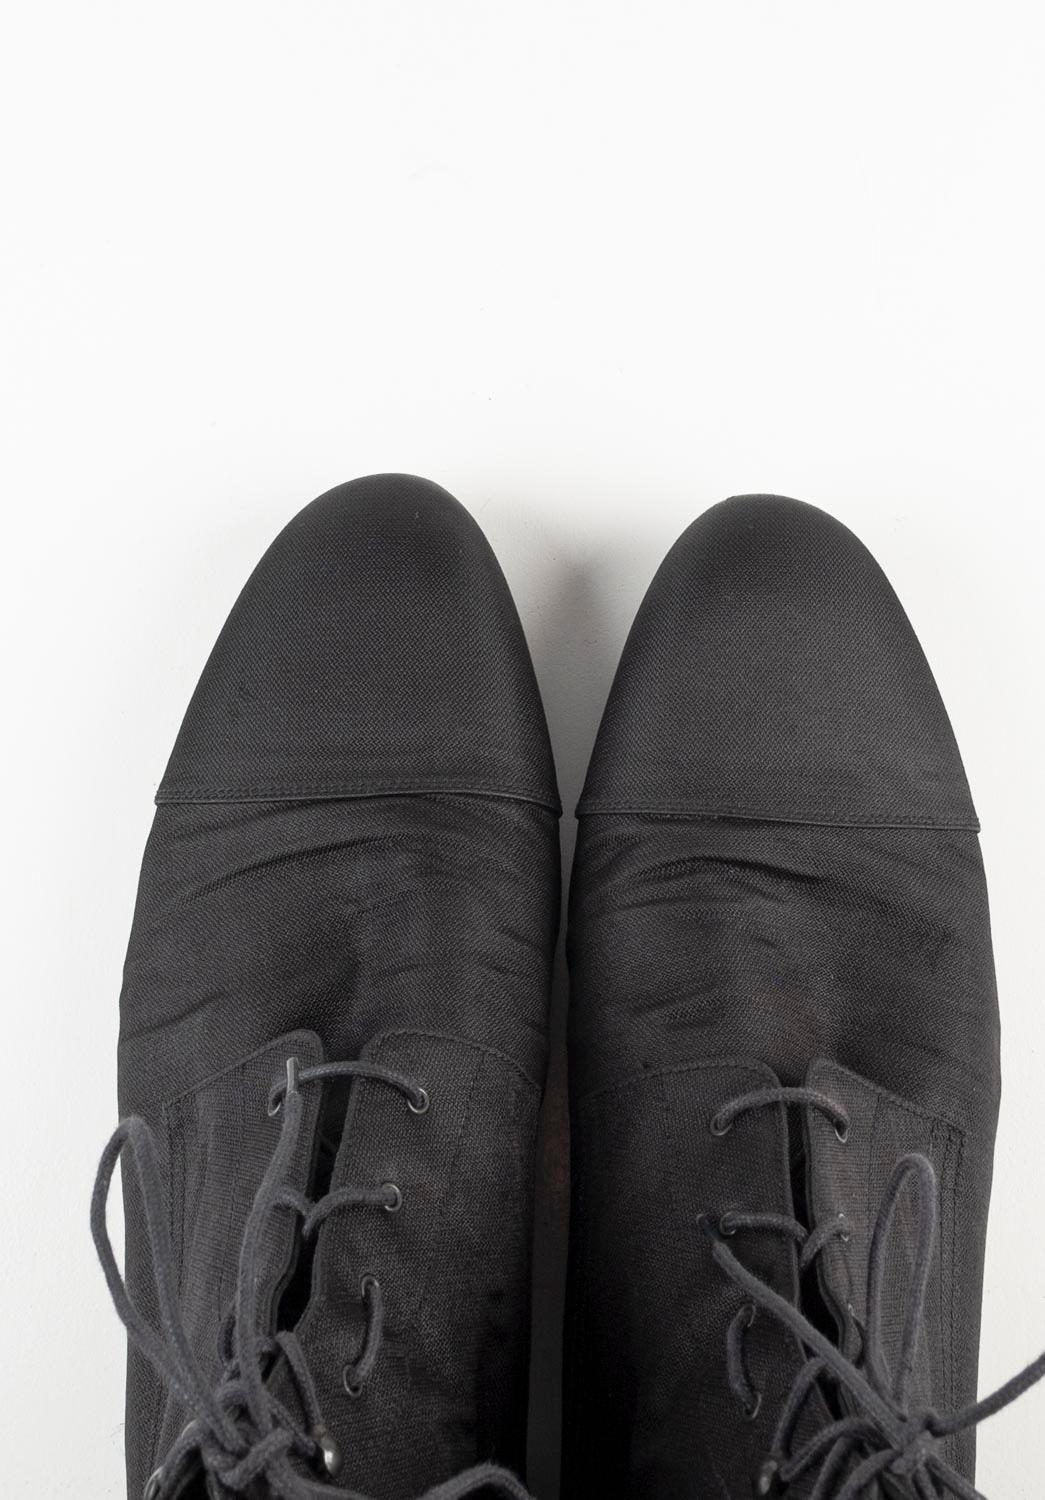 Men's  Louis Vuitton Men Shoes Military Nylon Light Boots, Size UK10, S667  For Sale